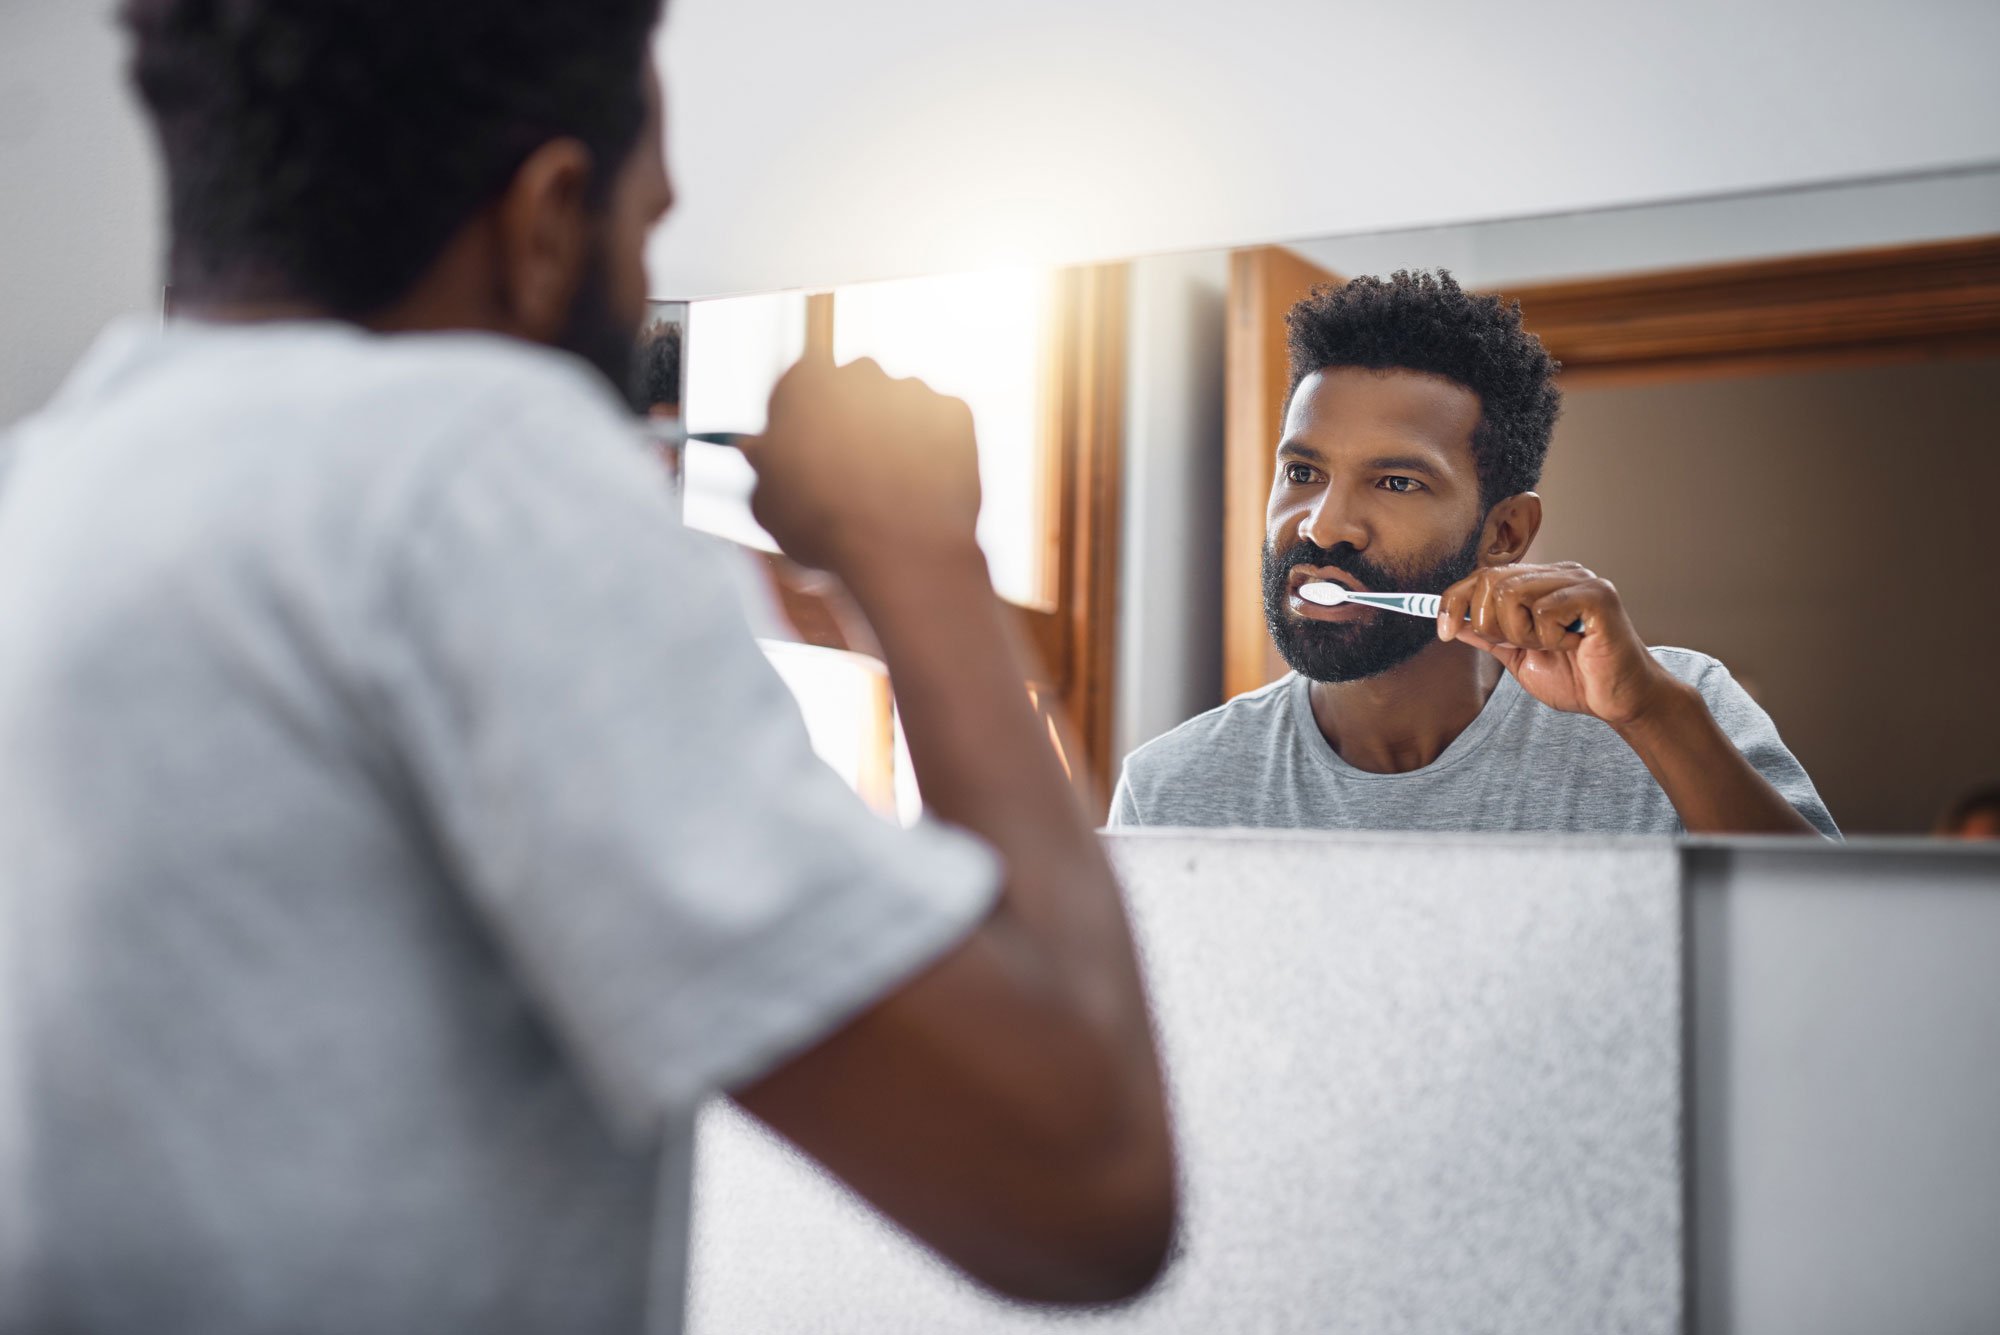 Man watching himself brush his teeth in the mirror